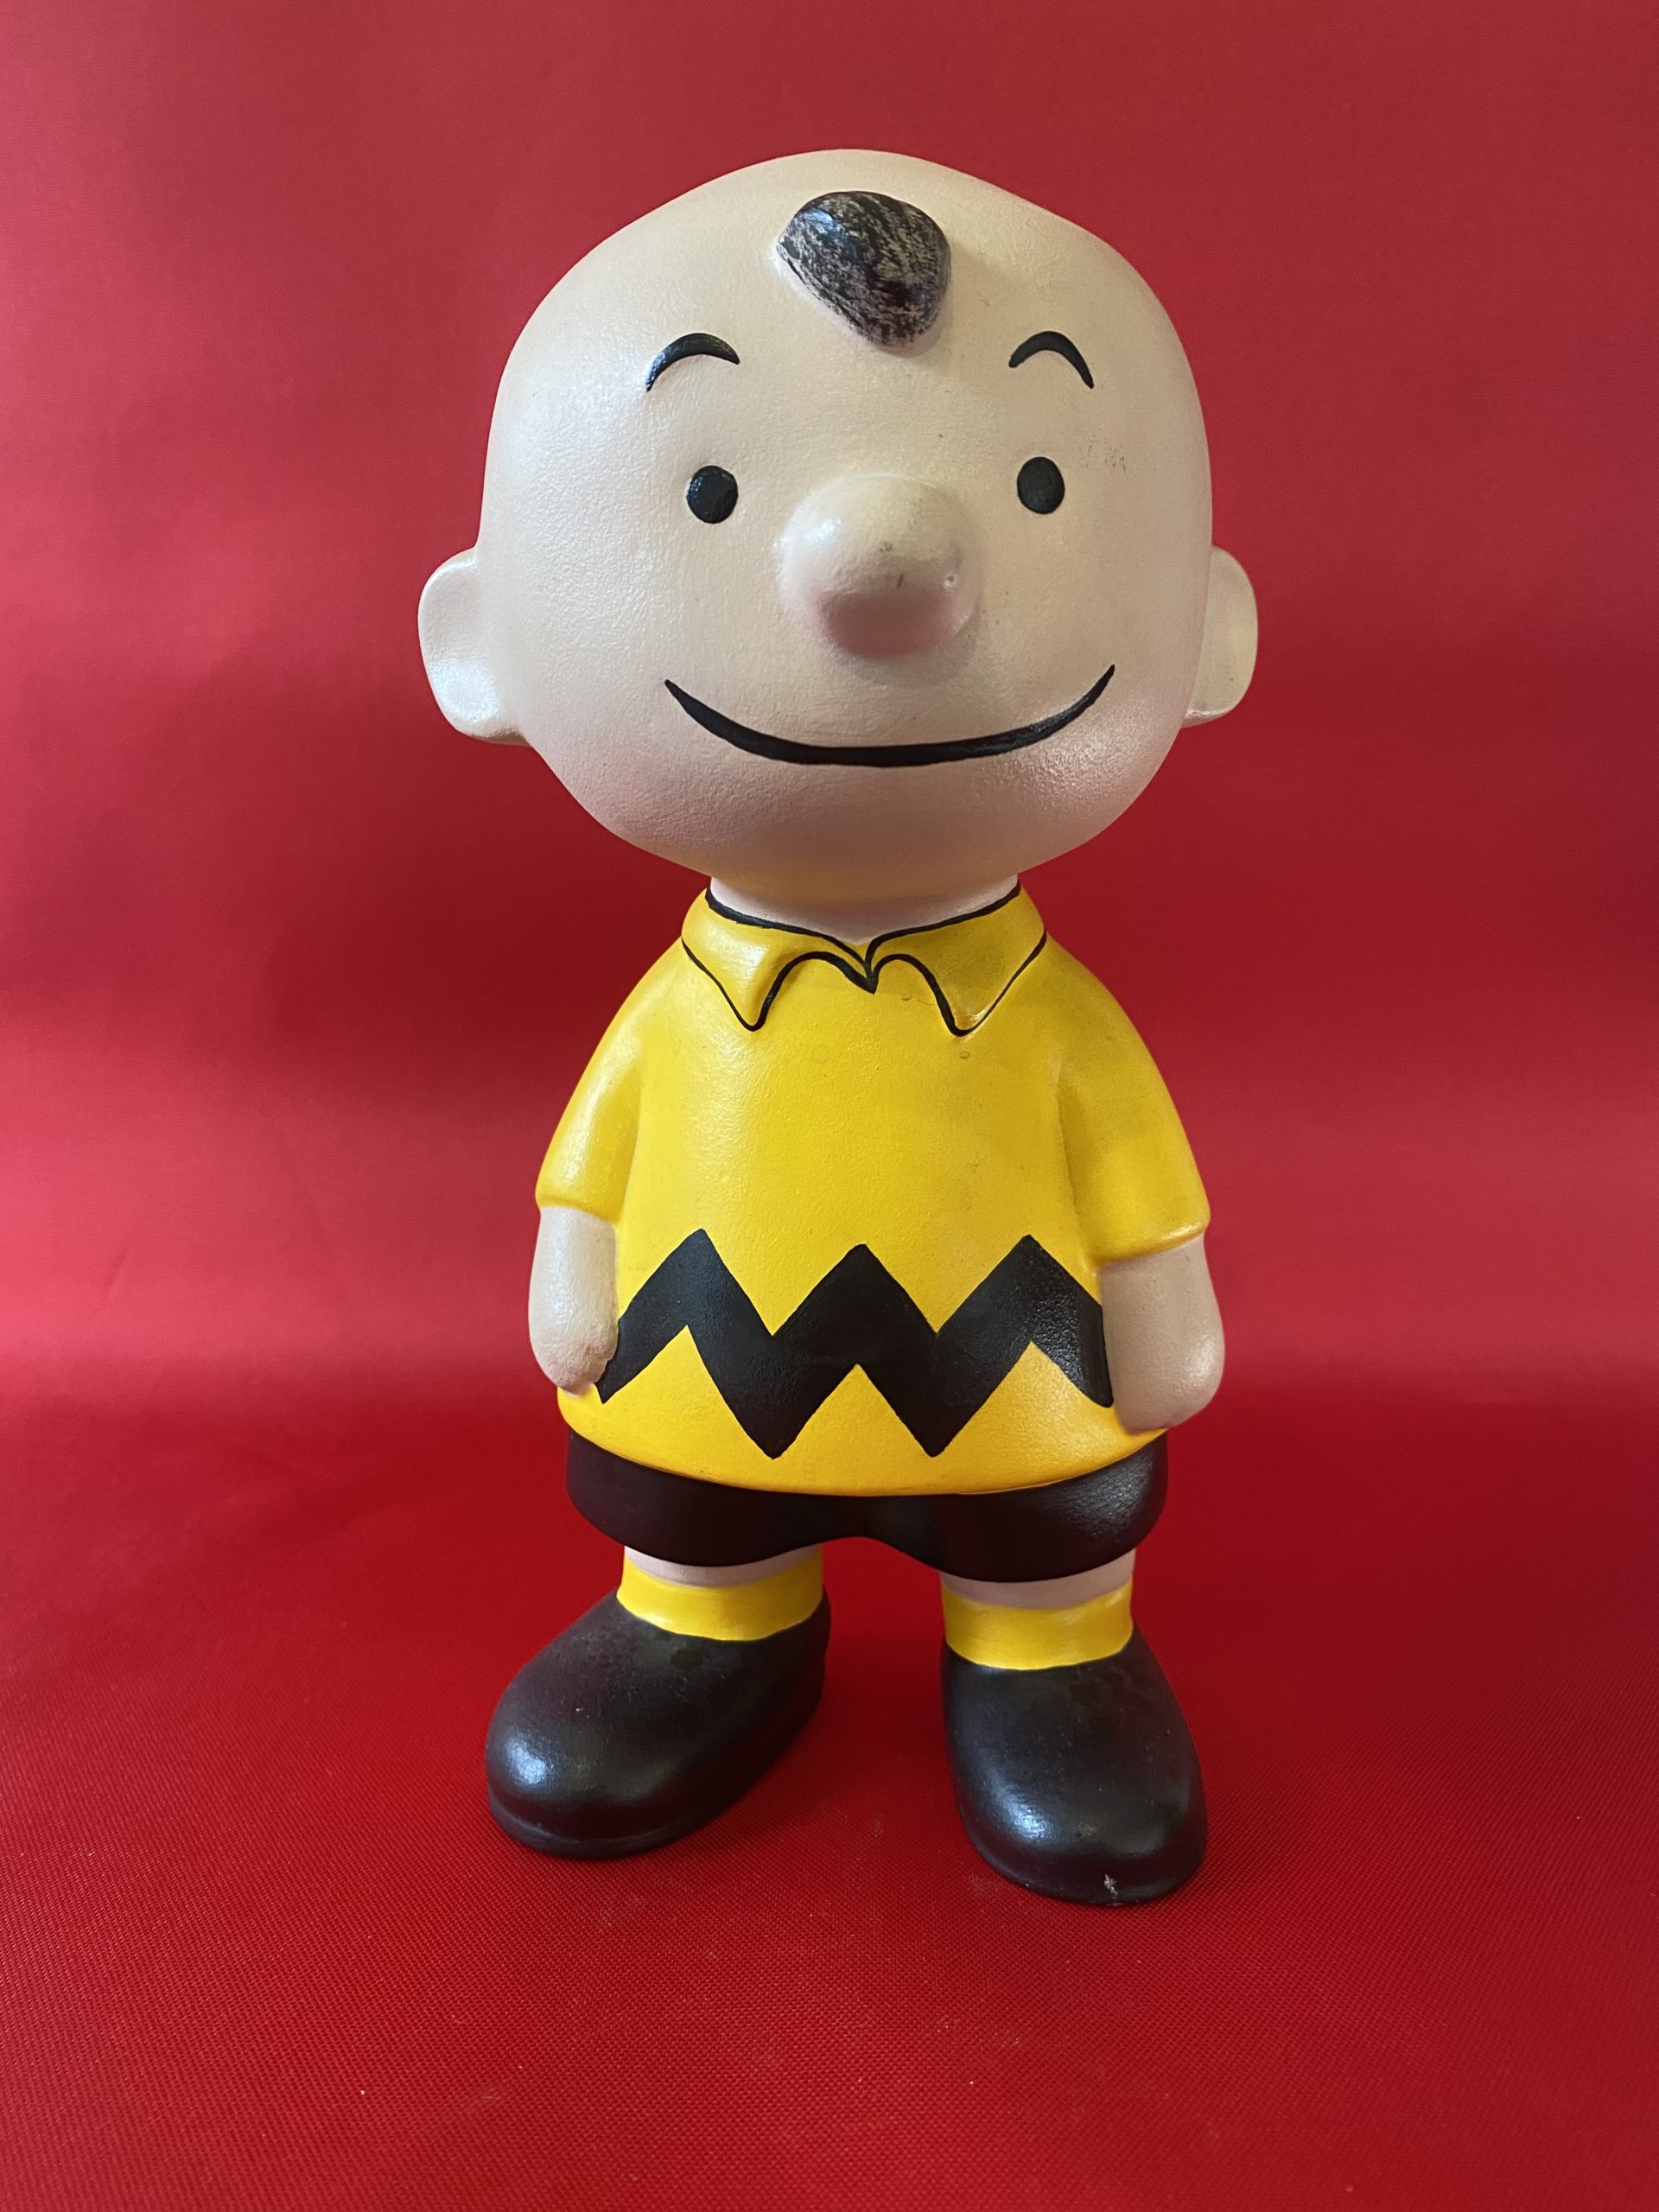 チャーリーブラウン ビンテージ ハンドメイド フィギュア 1965年 60’s ピーナッツ 陶器 Peanuts Charlie Brown  ceramic figure Handmade